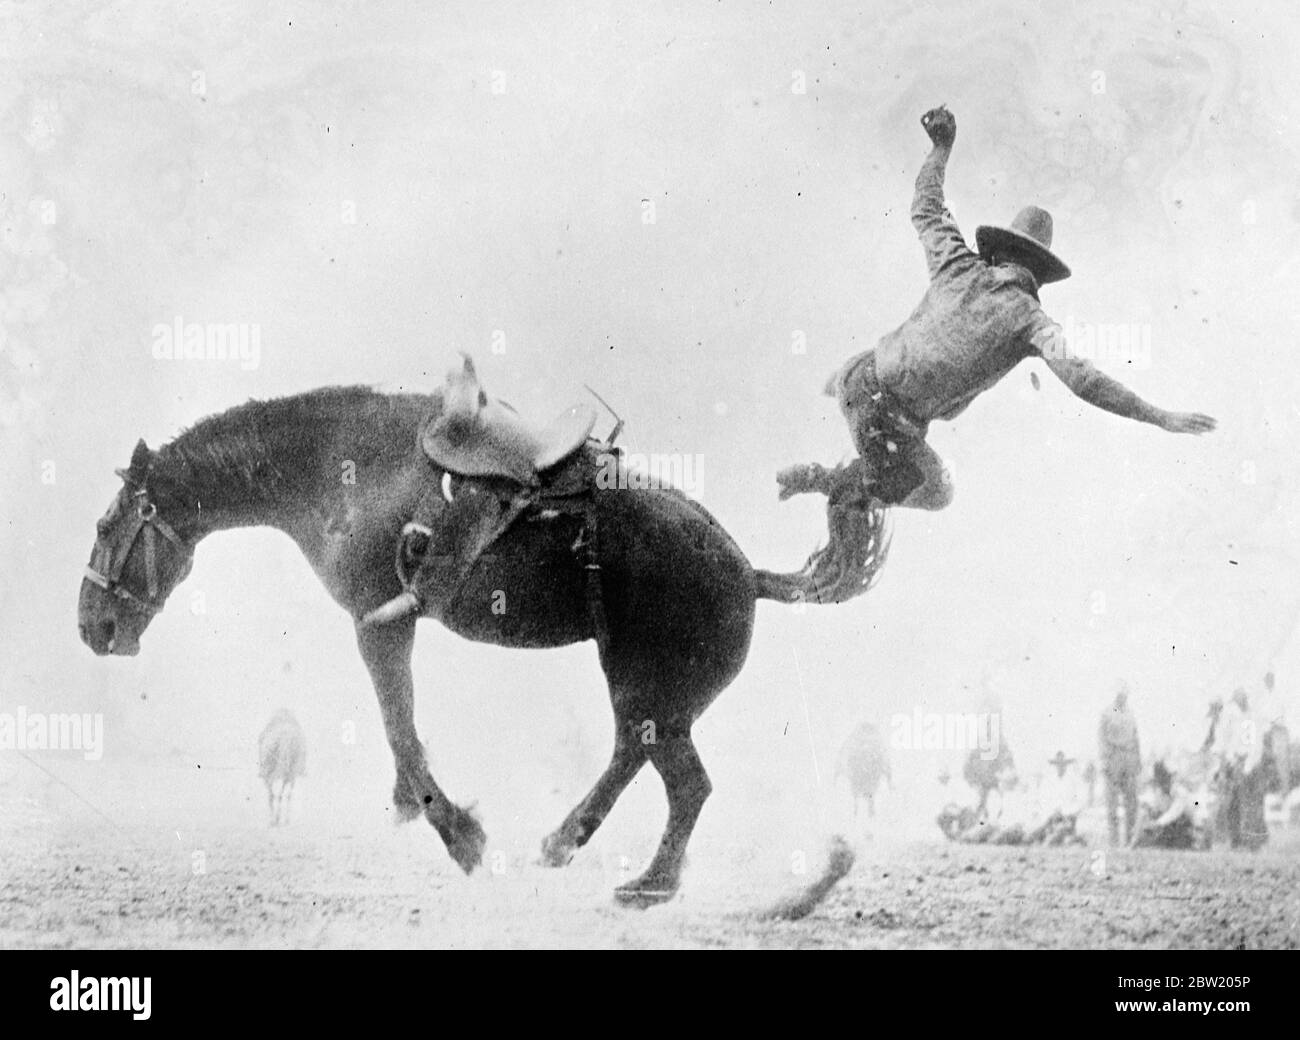 Un bravo bramone e l'fuorilegge aggiunge un altro alla sua lista di vittorie, come il cowboy che ha tentato di cavalcare lui va in barca attraverso l'aria - un groviglio di braccia e gambe a Cheyenne, Wyoming Rodeo 15 luglio 1937. Foto Stock